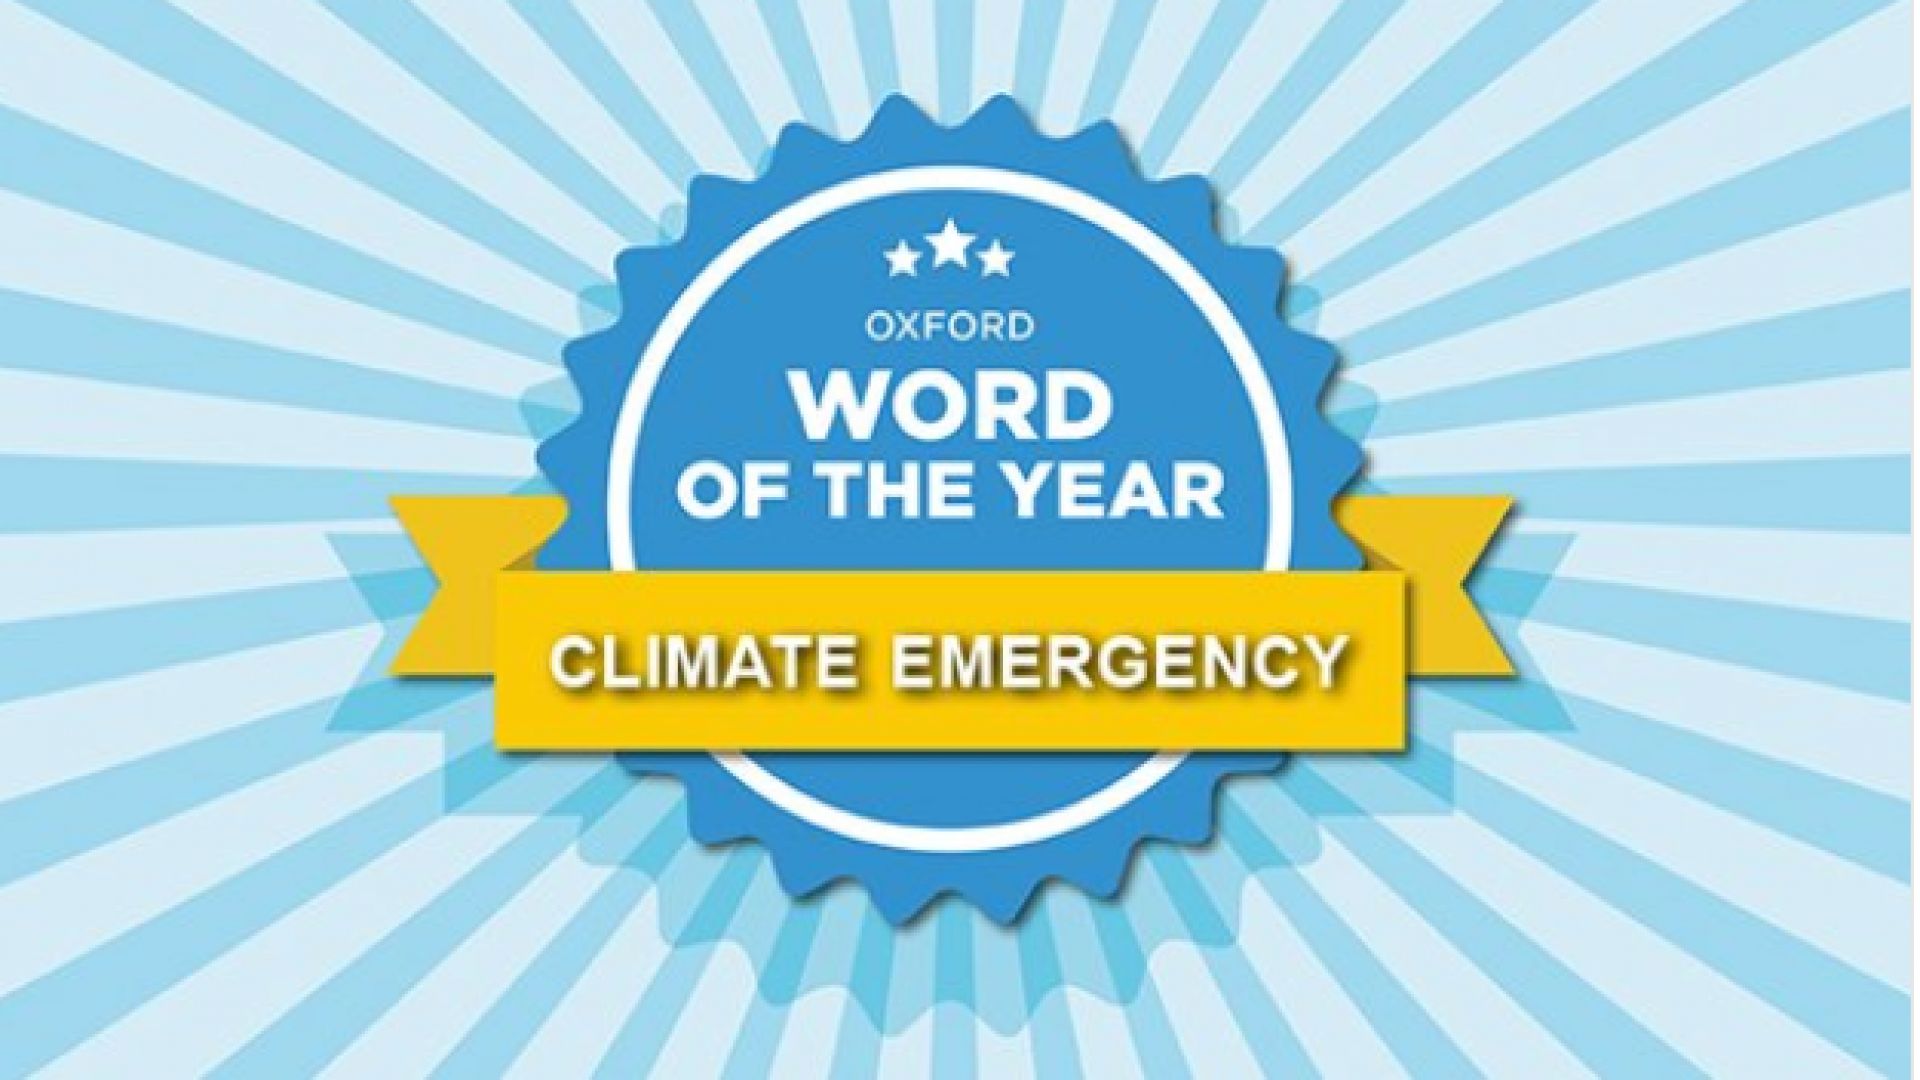 Оксфордският речник определи думата на 2019 година climate emergency което